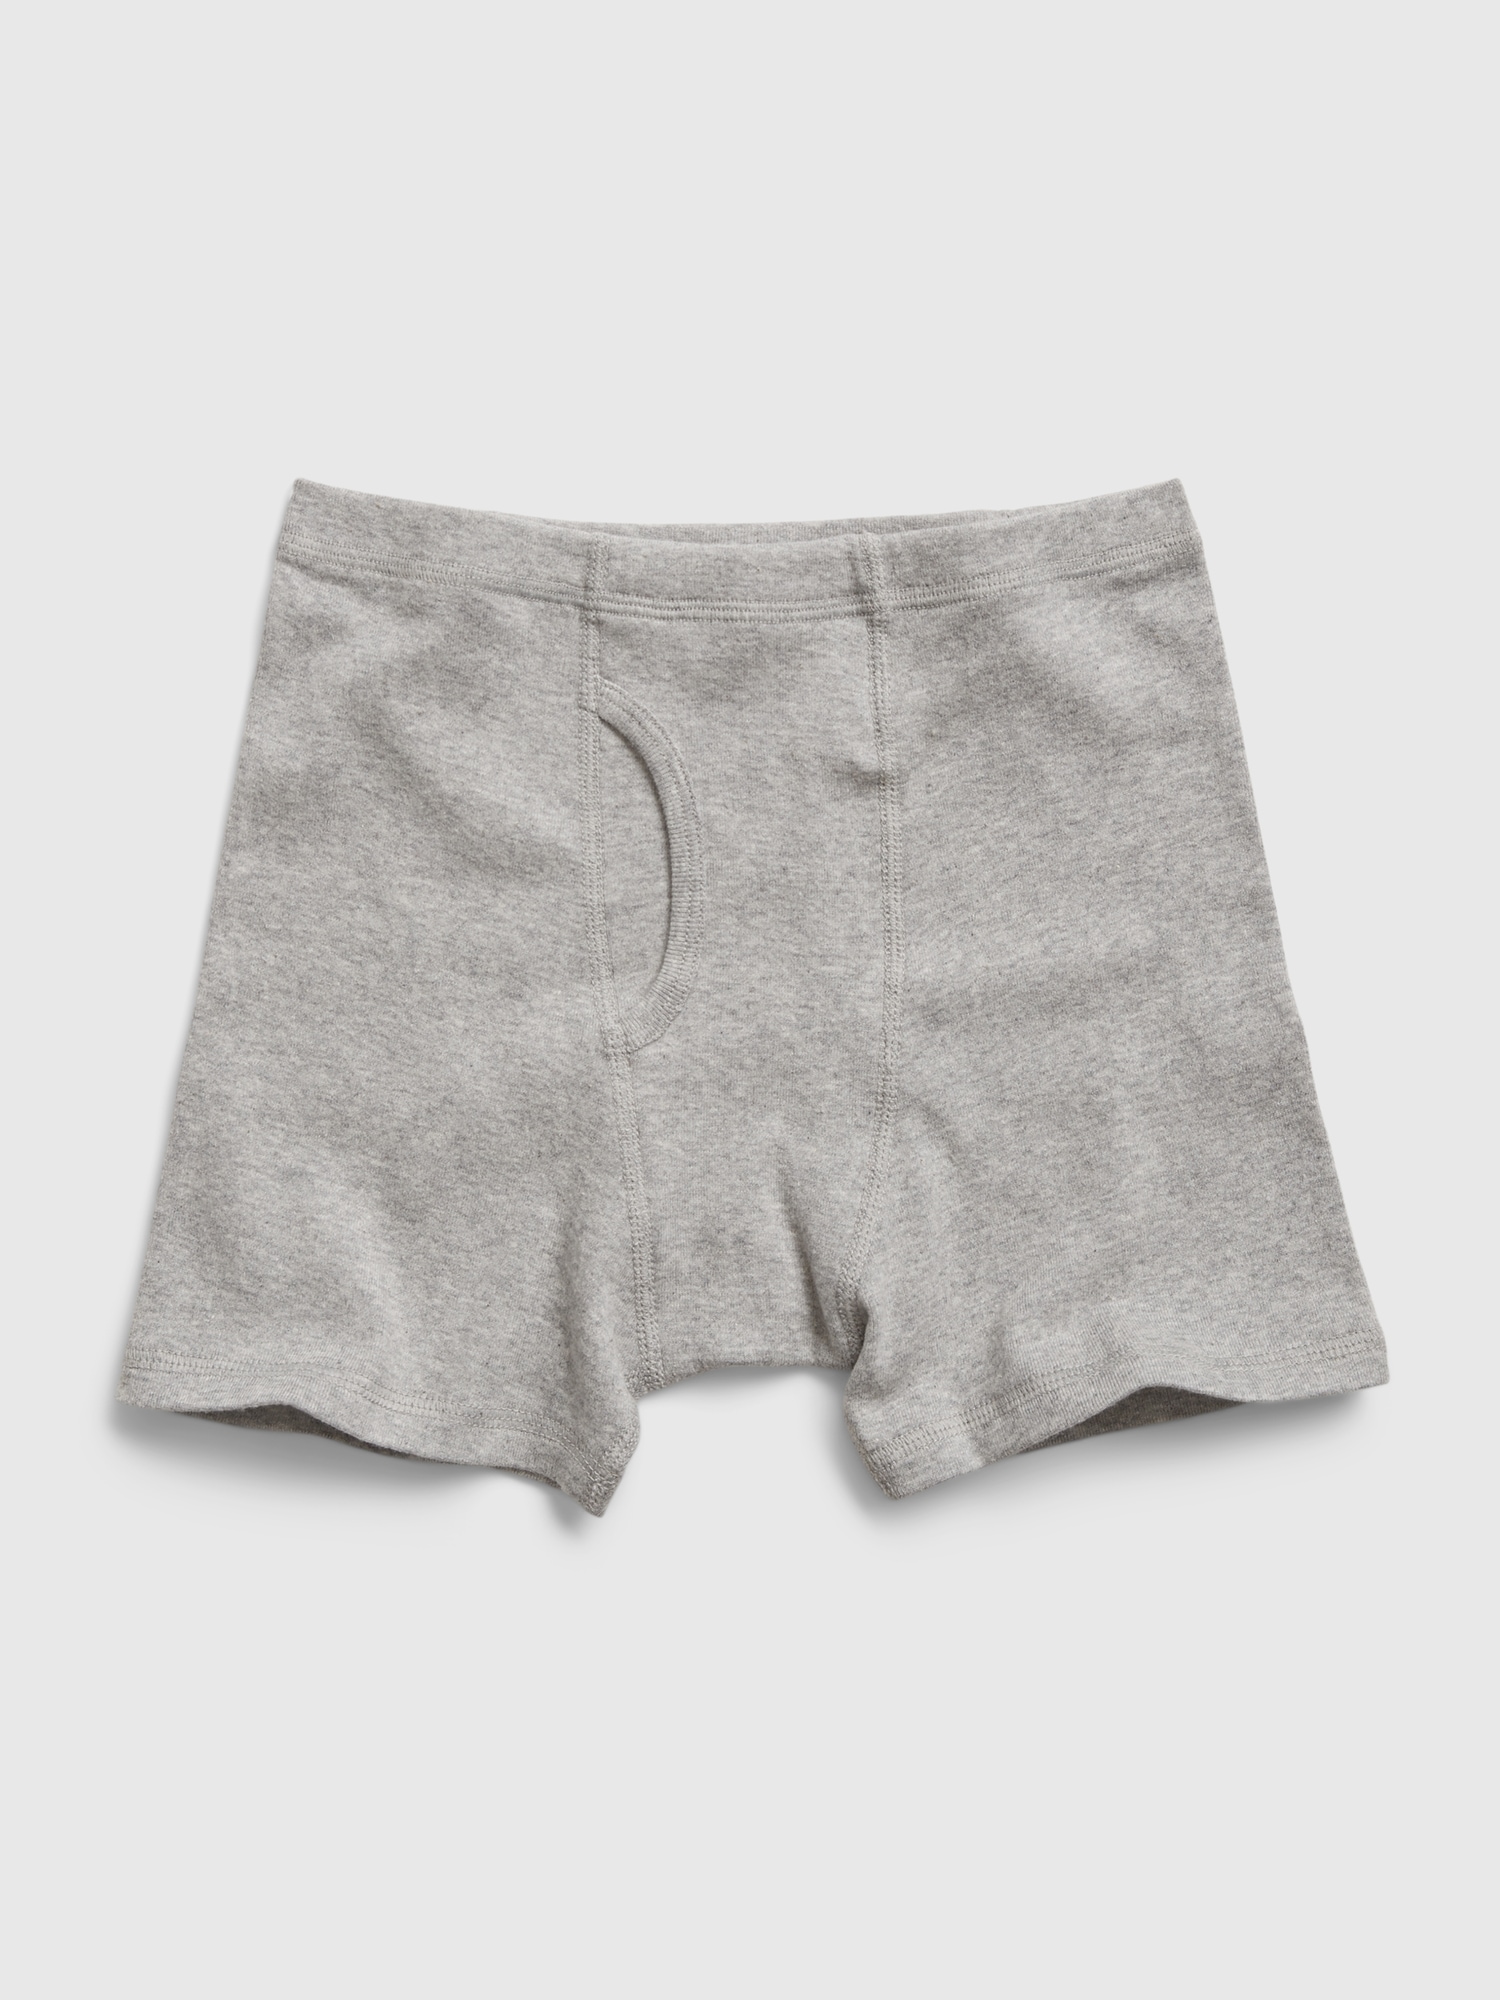 JAHSIYI Boys Underwear Size 8 Kids Boxer Briefs 100 Percent Cotton